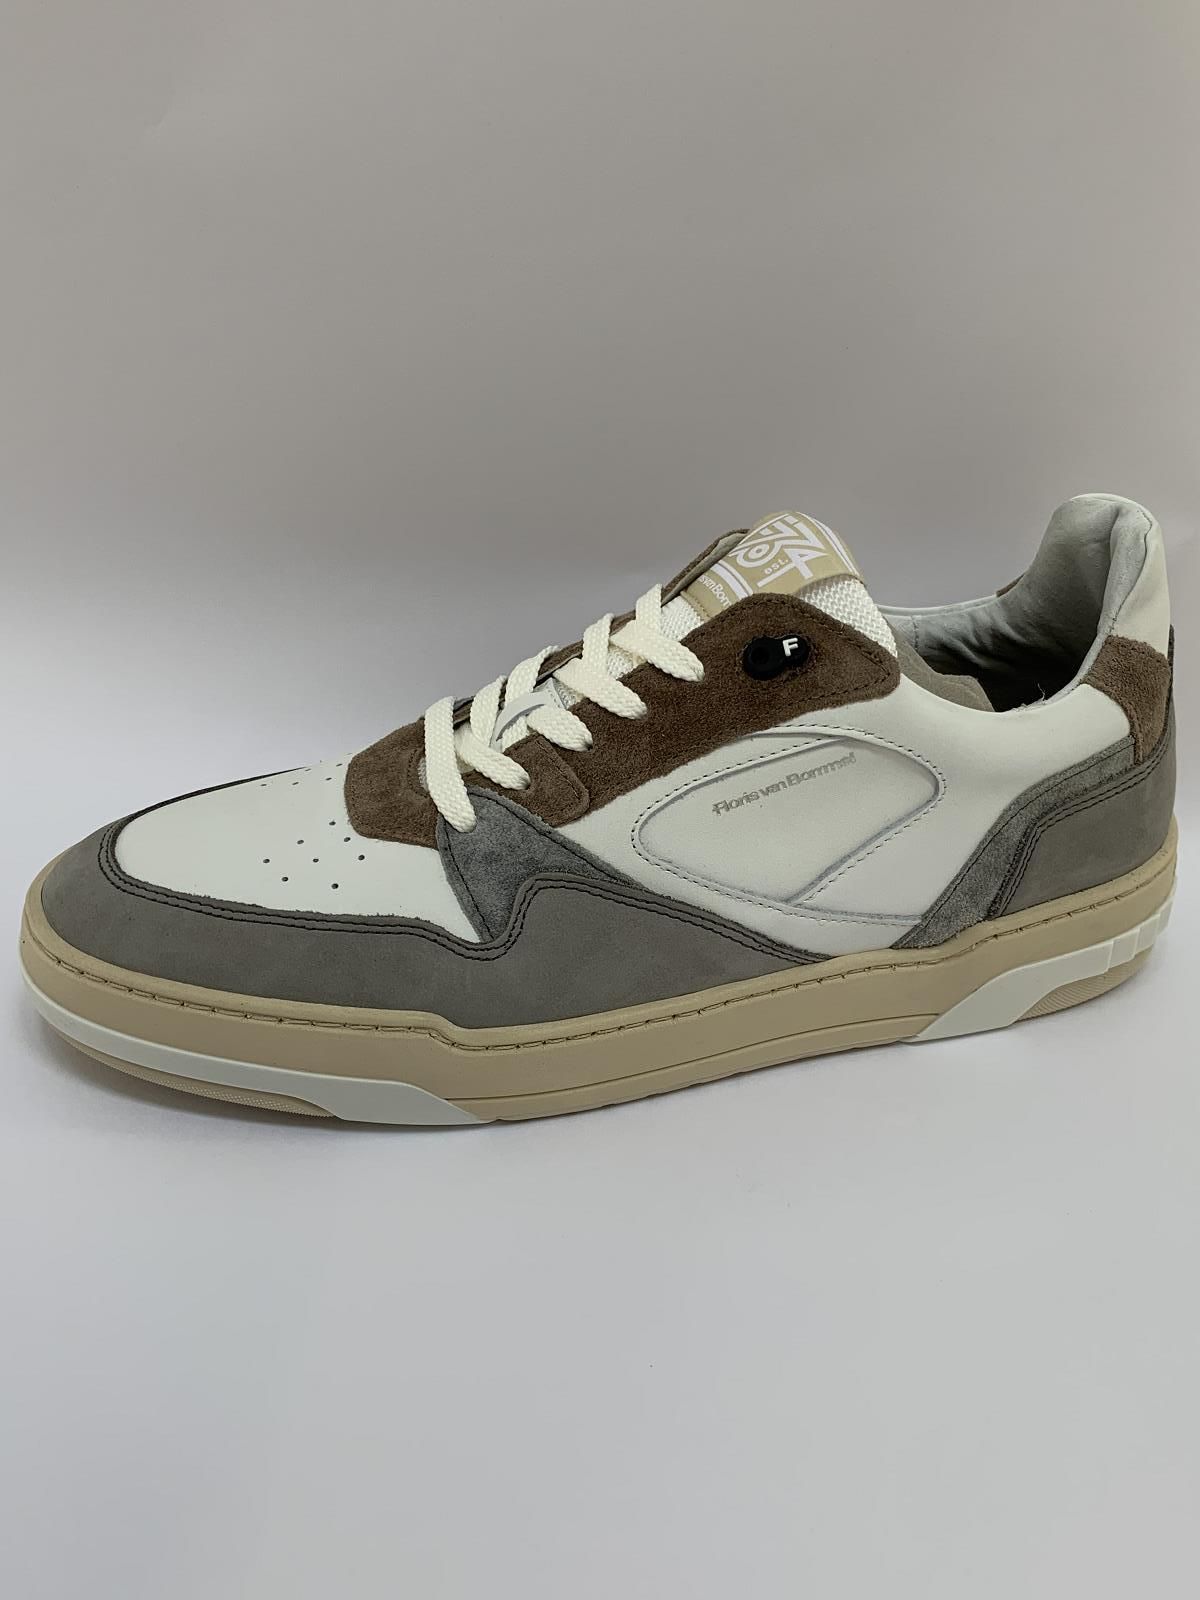 Van Bommel Sneaker Wit heren (Sneaker Wit-Grijs - 10201-60-02) - Schoenen Luca